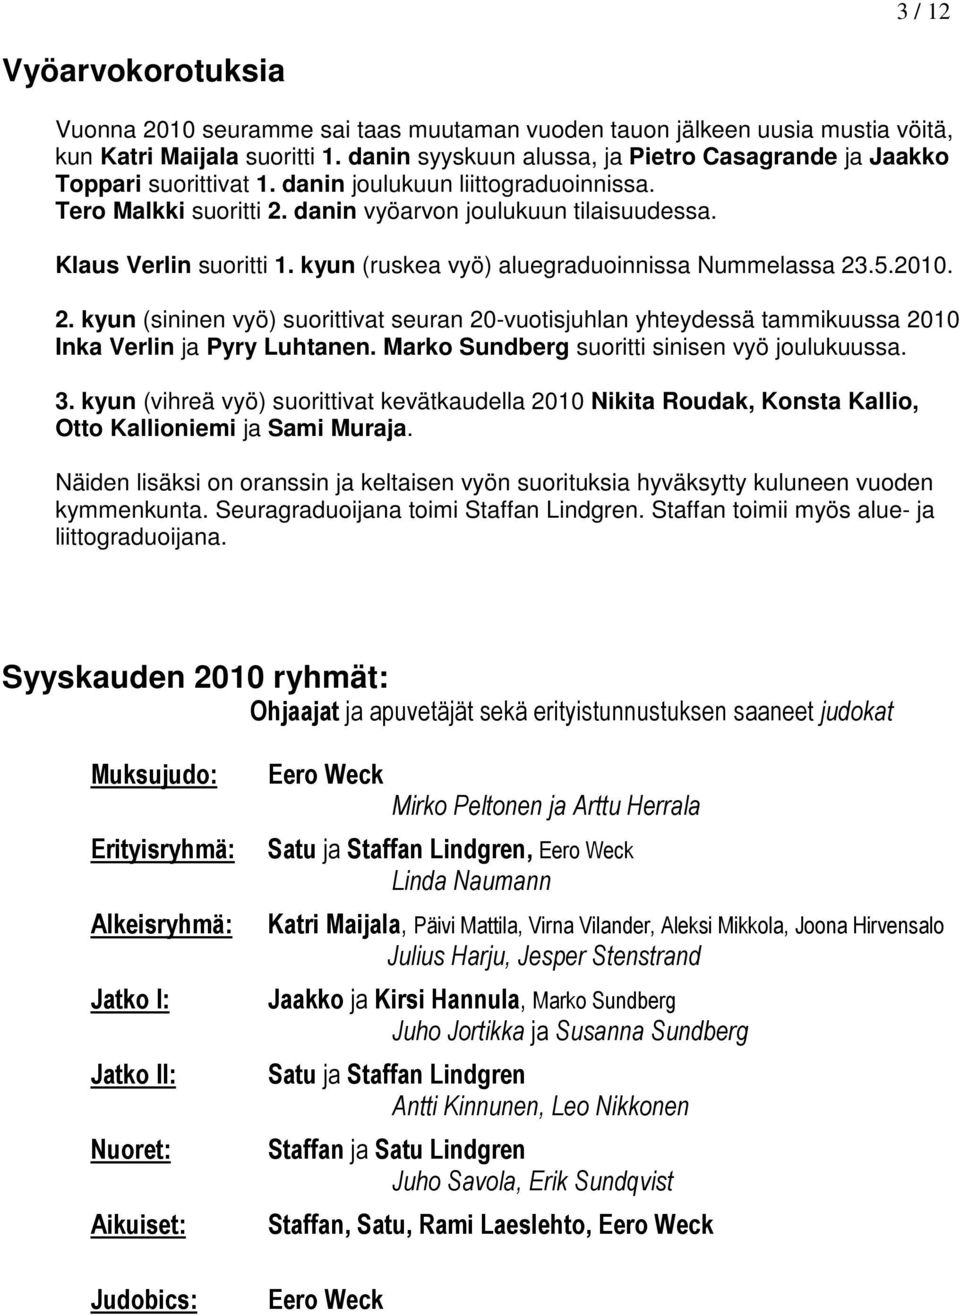 Klaus Verlin suoritti 1. kyun (ruskea vyö) aluegraduoinnissa Nummelassa 23.5.2010. 2. kyun (sininen vyö) suorittivat seuran 20-vuotisjuhlan yhteydessä tammikuussa 2010 Inka Verlin ja Pyry Luhtanen.